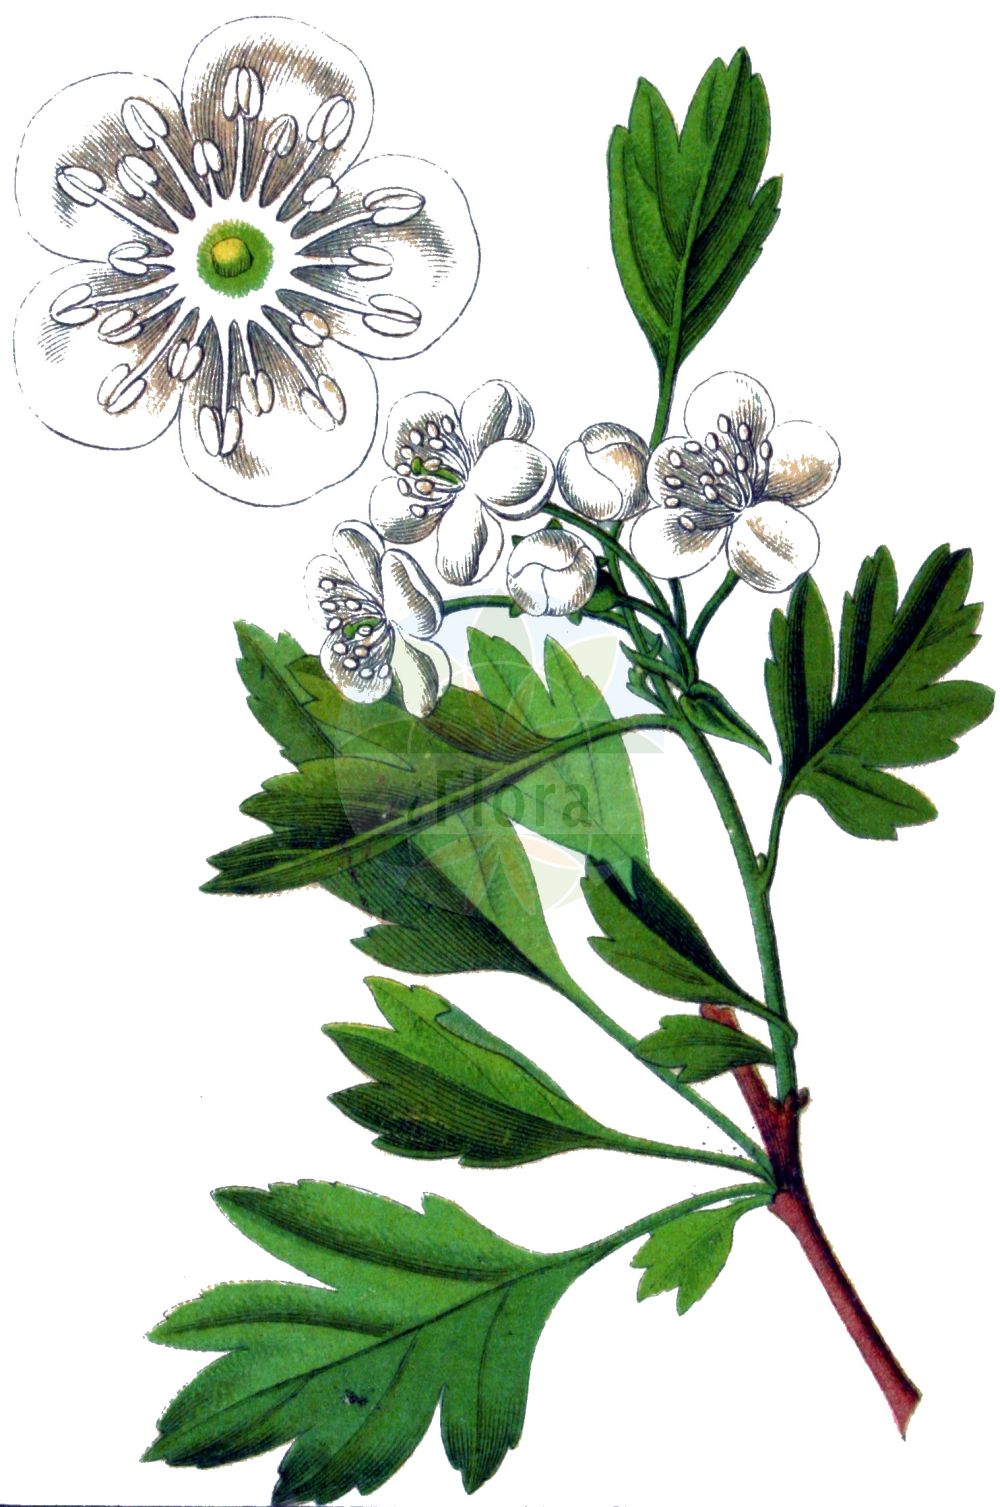 Historische Abbildung von Crataegus monogyna (Eingriffeliger Weißdorn - Hawthorn). Das Bild zeigt Blatt, Bluete, Frucht und Same. ---- Historical Drawing of Crataegus monogyna (Eingriffeliger Weißdorn - Hawthorn). The image is showing leaf, flower, fruit and seed.(Crataegus monogyna,Eingriffeliger Weißdorn,Hawthorn,Crataegus aegeica,Crataegus aguilaris,Crataegus alemanniensis,Crataegus alutacea,Crataegus apiifolia,Crataegus azarella,Crataegus borealoides,Crataegus bracteolaris,Crataegus brevispina,Crataegus chlorocarpa,Crataegus cuneata,Crataegus curvisepaloides,Crataegus debeauxii,Crataegus dissecta,Crataegus diversifolia,Crataegus elegans,Crataegus floribunda,Crataegus granatensis,Crataegus hirsuta,Crataegus inermis,Crataegus insegnae,Crataegus integerrima,Crataegus intermedia,Crataegus jacquinii,Crataegus krima,Crataegus krumbholzii,Crataegus kyrtostyla,Crataegus lamprophylla,Crataegus lasiocarpa,Crataegus leiomonogyna,Crataegus lipskyi,Crataegus maroccana,Crataegus maura,Crataegus monogyna,Crataegus oligacantha,Crataegus orientobaltica,Crataegus panachaica,Crataegus parvifolia,Crataegus paucifoliata,Crataegus petiolulata,Crataegus popovii,Crataegus praearmata,Crataegus pulchella,Crataegus segobricensis,Crataegus septempartita,Crataegus stevenii,Crataegus subborealis,Crataegus subintegriloba,Crataegus sublucens,Crataegus subserrata,Crataegus thyrsoidea,Crataegus triloba,Crataegus villosa,Crataegus xeromorpha,Mespilus brevispina,Mespilus diversifolia,Mespilus elegans,Mespilus fissa,Mespilus insegnae,Mespilus maroccana,Mespilus maura,Mespilus monogyna,Mespilus polyacantha,Mespilus triloba,Oxyacantha apiifolia,Oxyacantha azarella,Oxyacantha elegans,Oxyacantha granatensis,Oxyacantha kyrtostyla,Oxyacantha monogyna,Eingriffeliger Weissdorn,Eingriffel-Weissdorn,Einkern-Weissdorn,Spitzlappiger Weissdorn,Hawthorn,Common Hawthorn,Oneseed Hawthorn,English Hawthorn,May,Quickthorn,Single-seed Hawthorn,Whitethorn,Crataegus,Weißdorn,Hawthorn,Rosaceae,Rosengewächse,Rose family,Blatt,Bluete,Frucht,Same,leaf,flower,fruit,seed,Sturm (1796f))